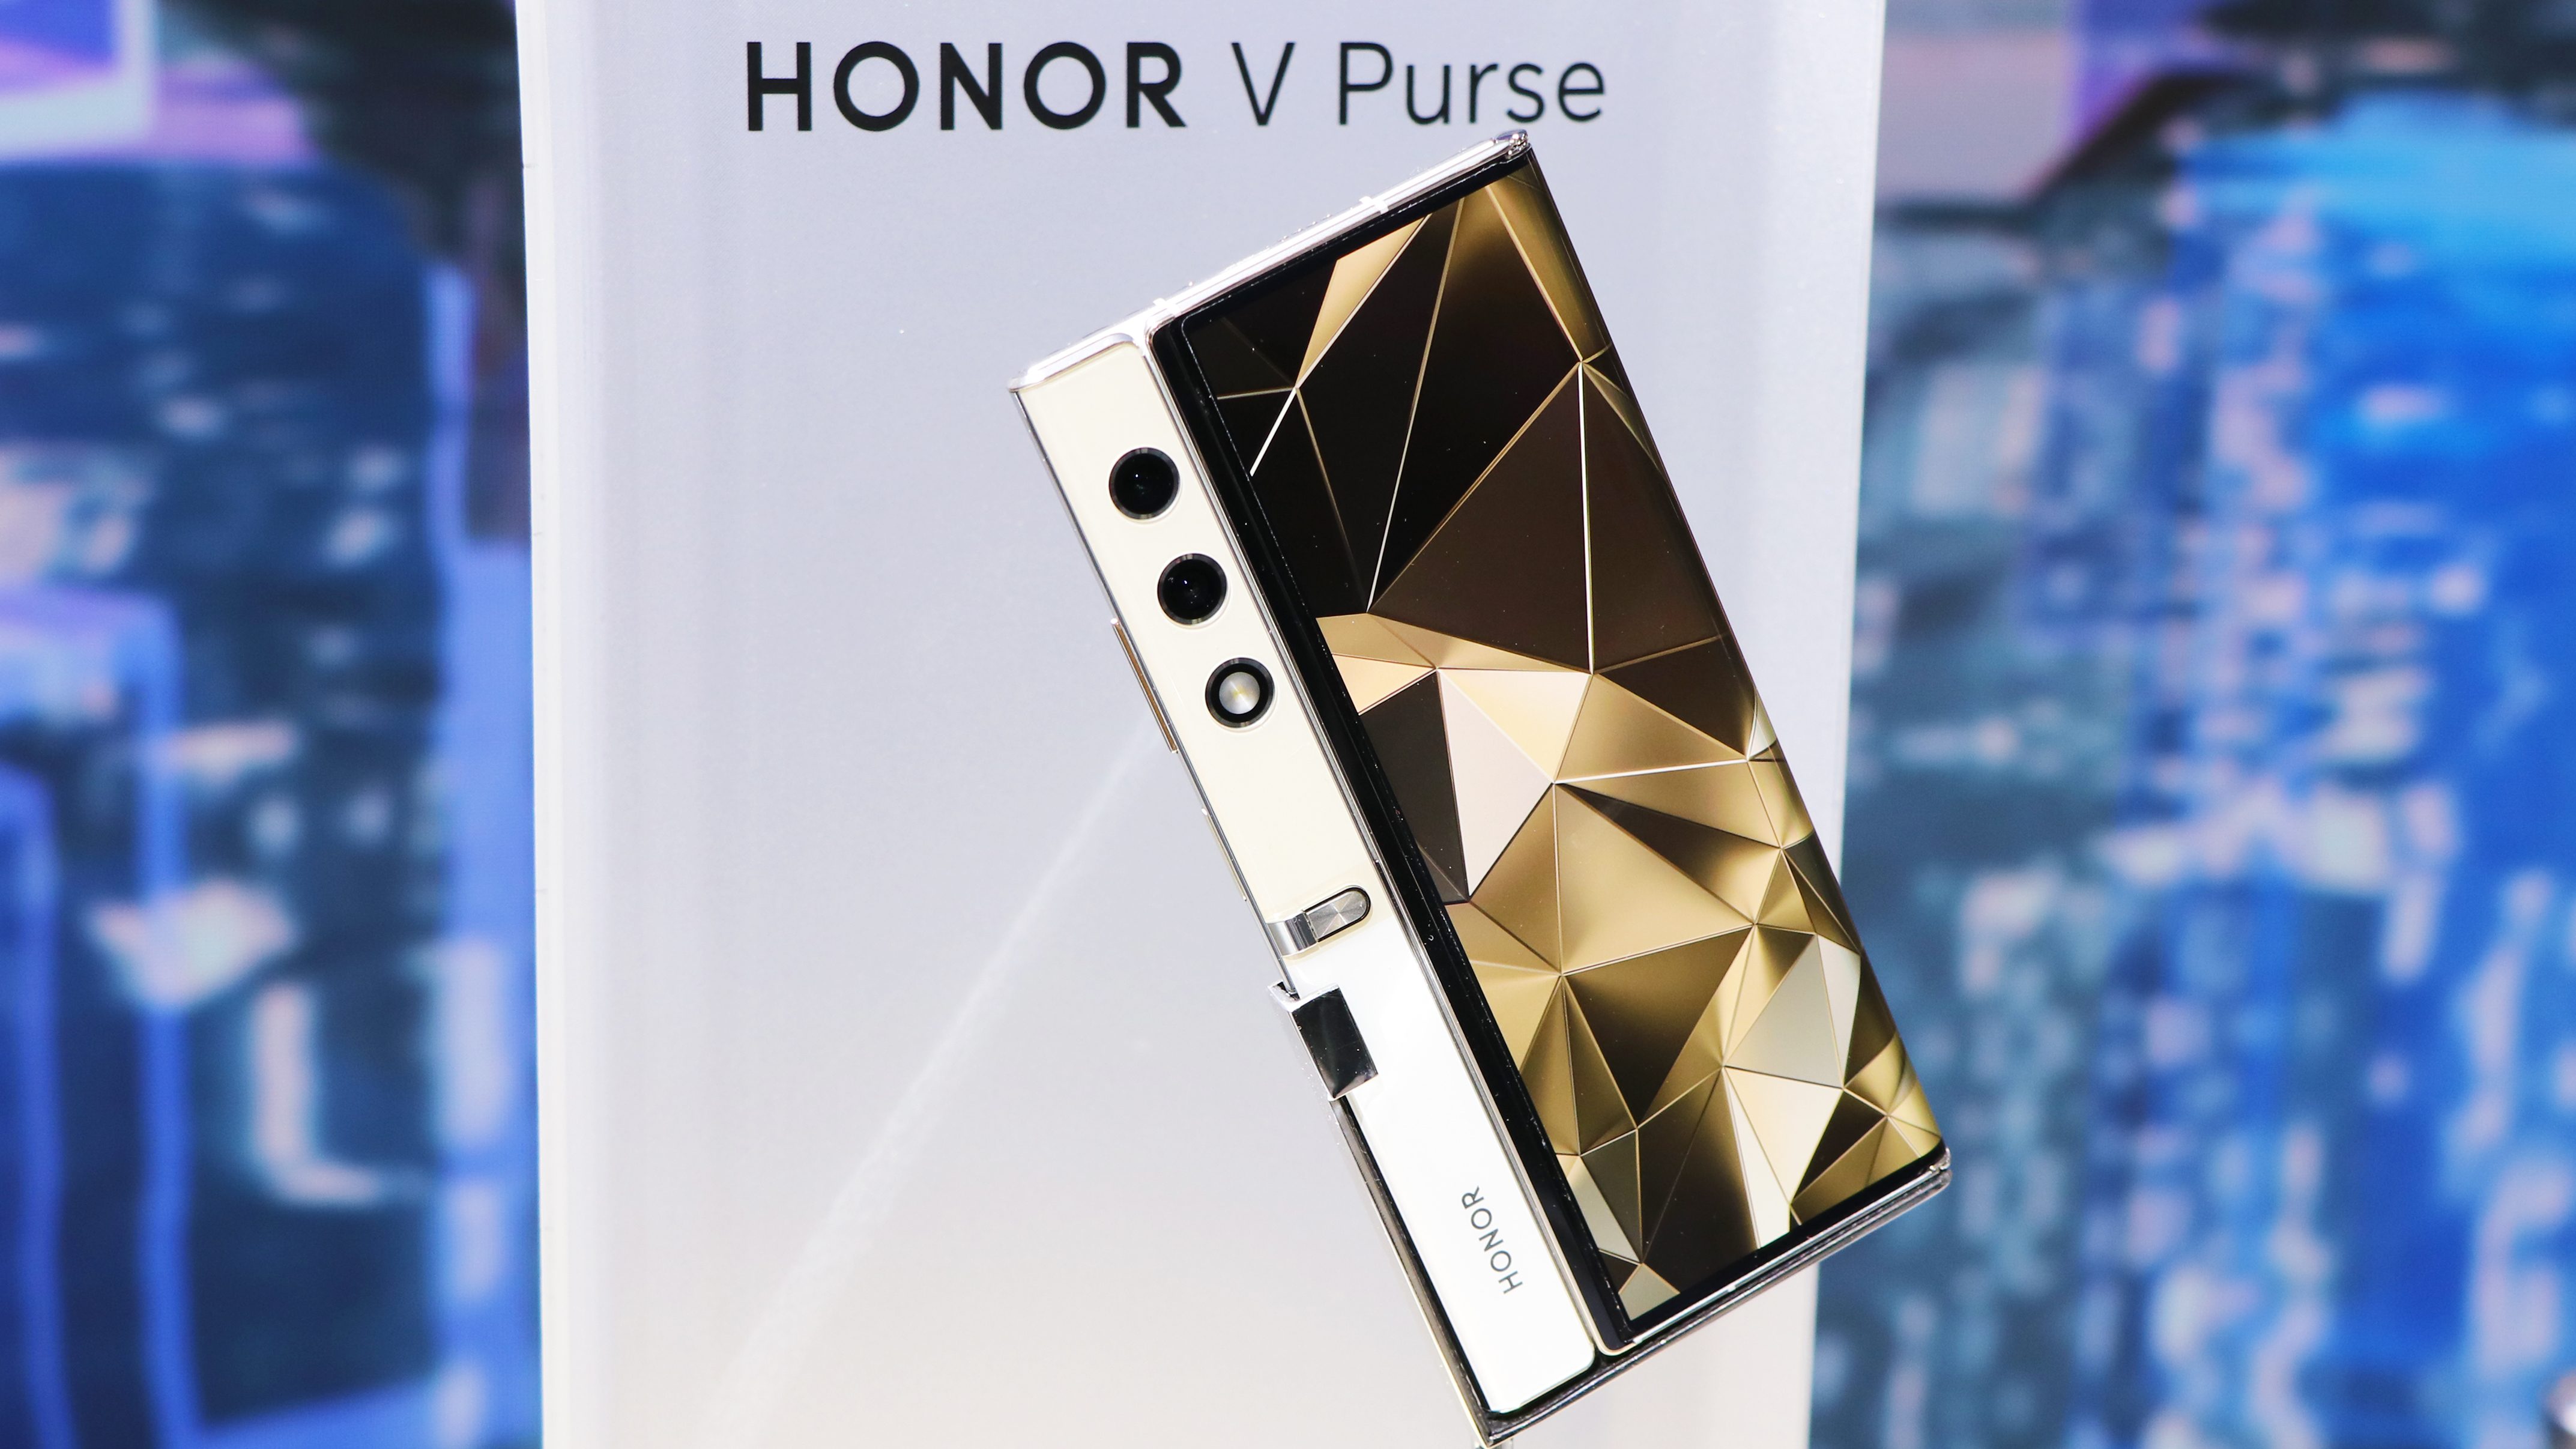 Ikke bare et koncept, men en produceret smartphone: Honor V Purse får premiere den 19. september.